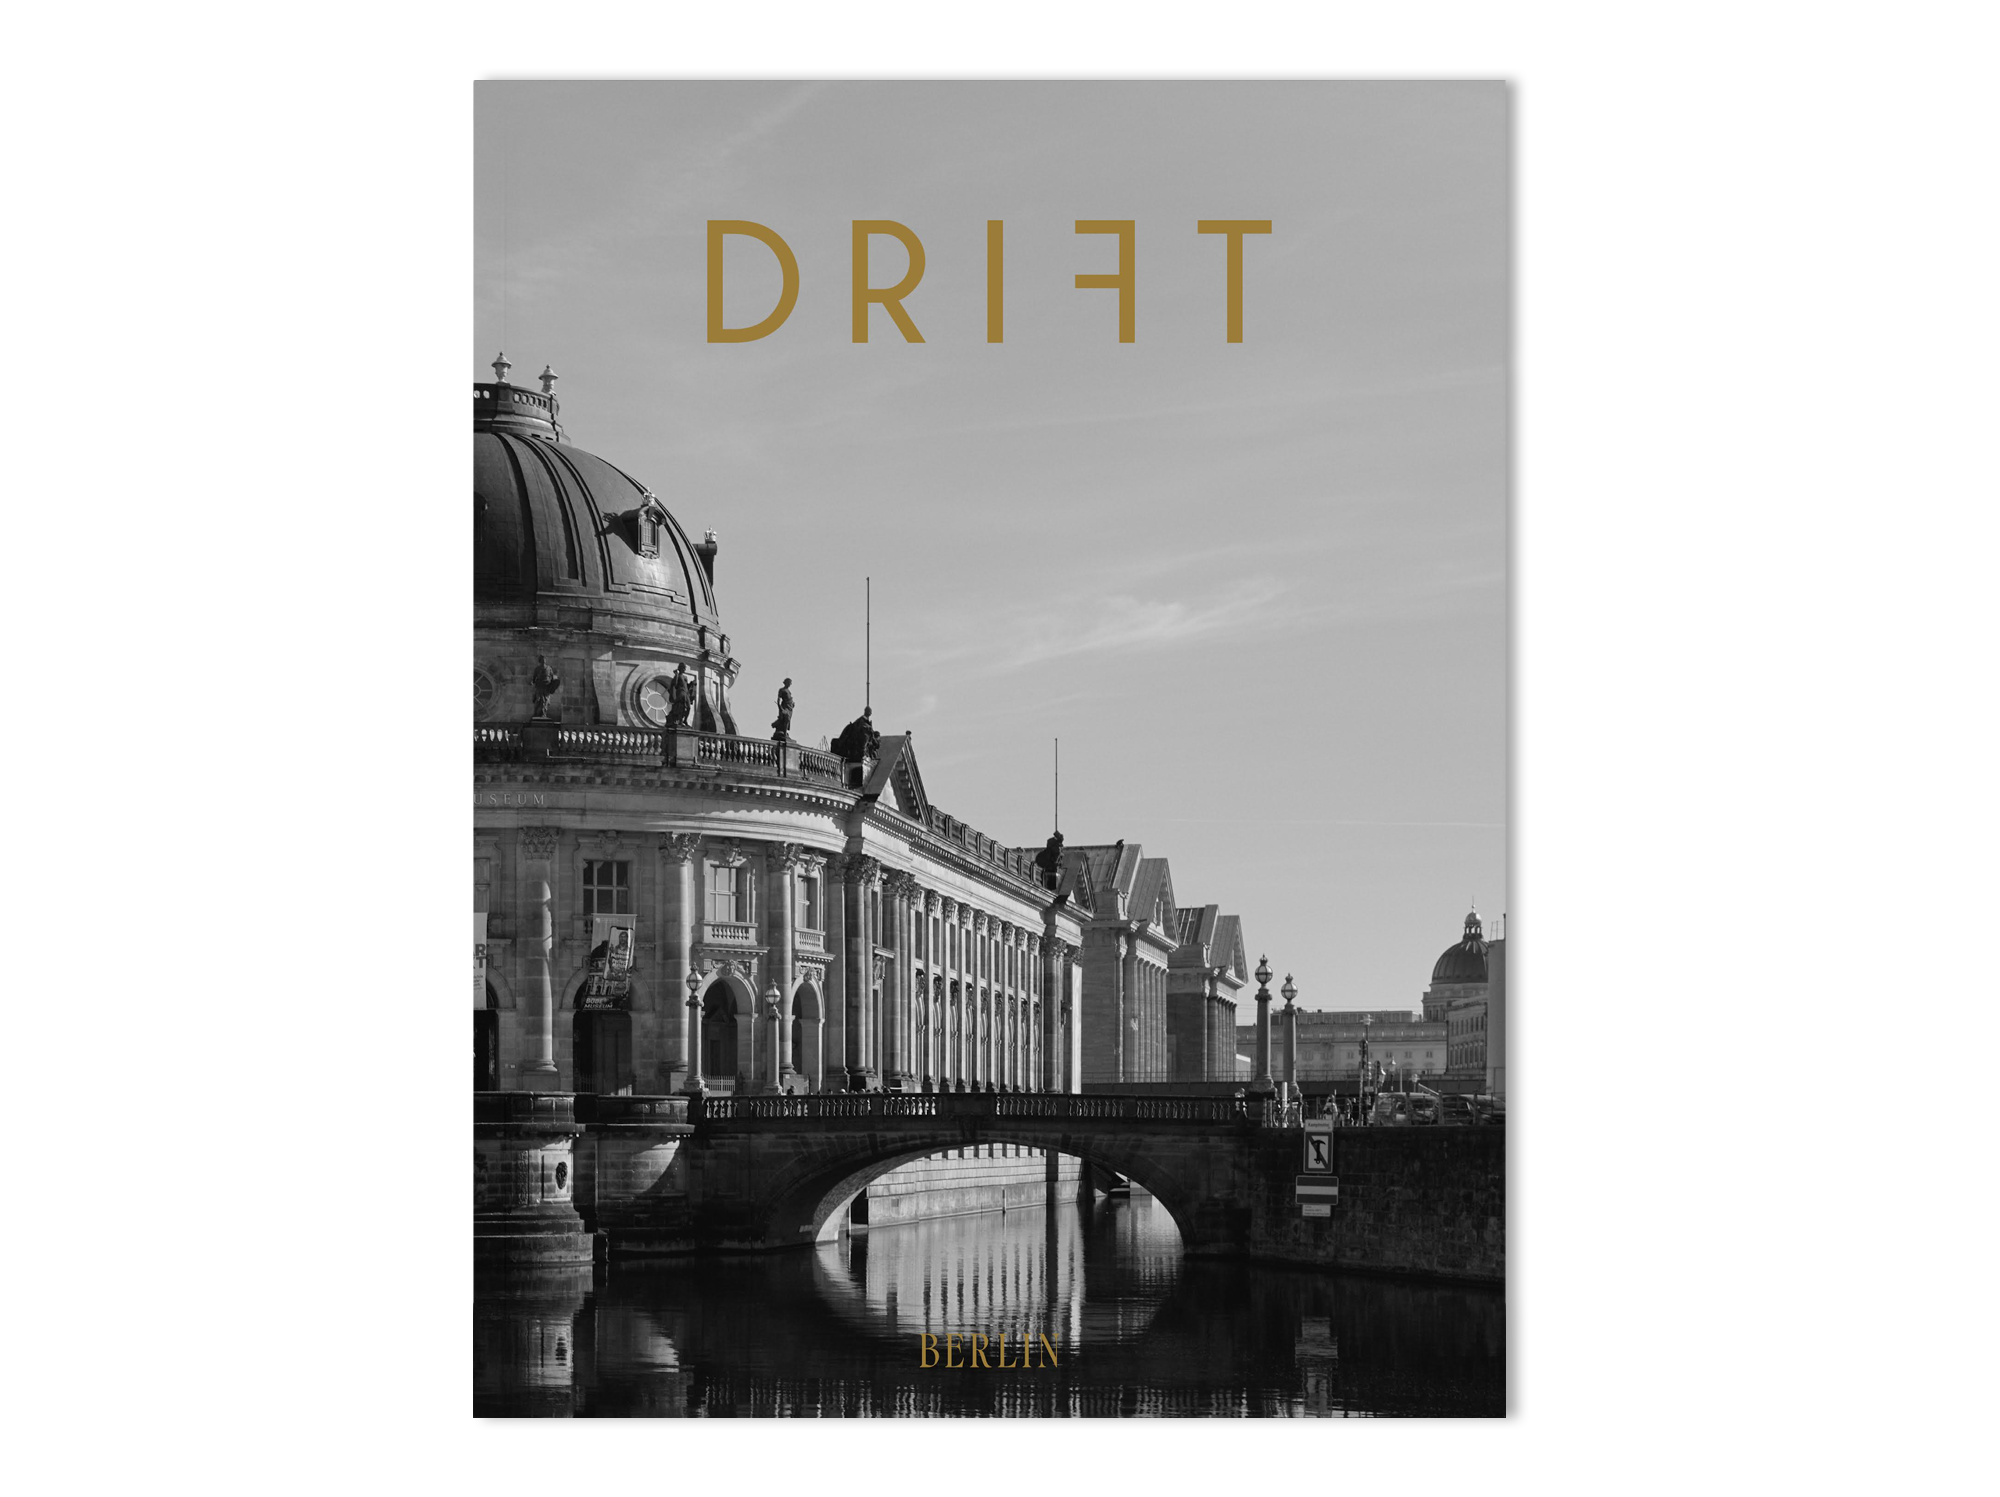 Drift | Issue 13 Berlin